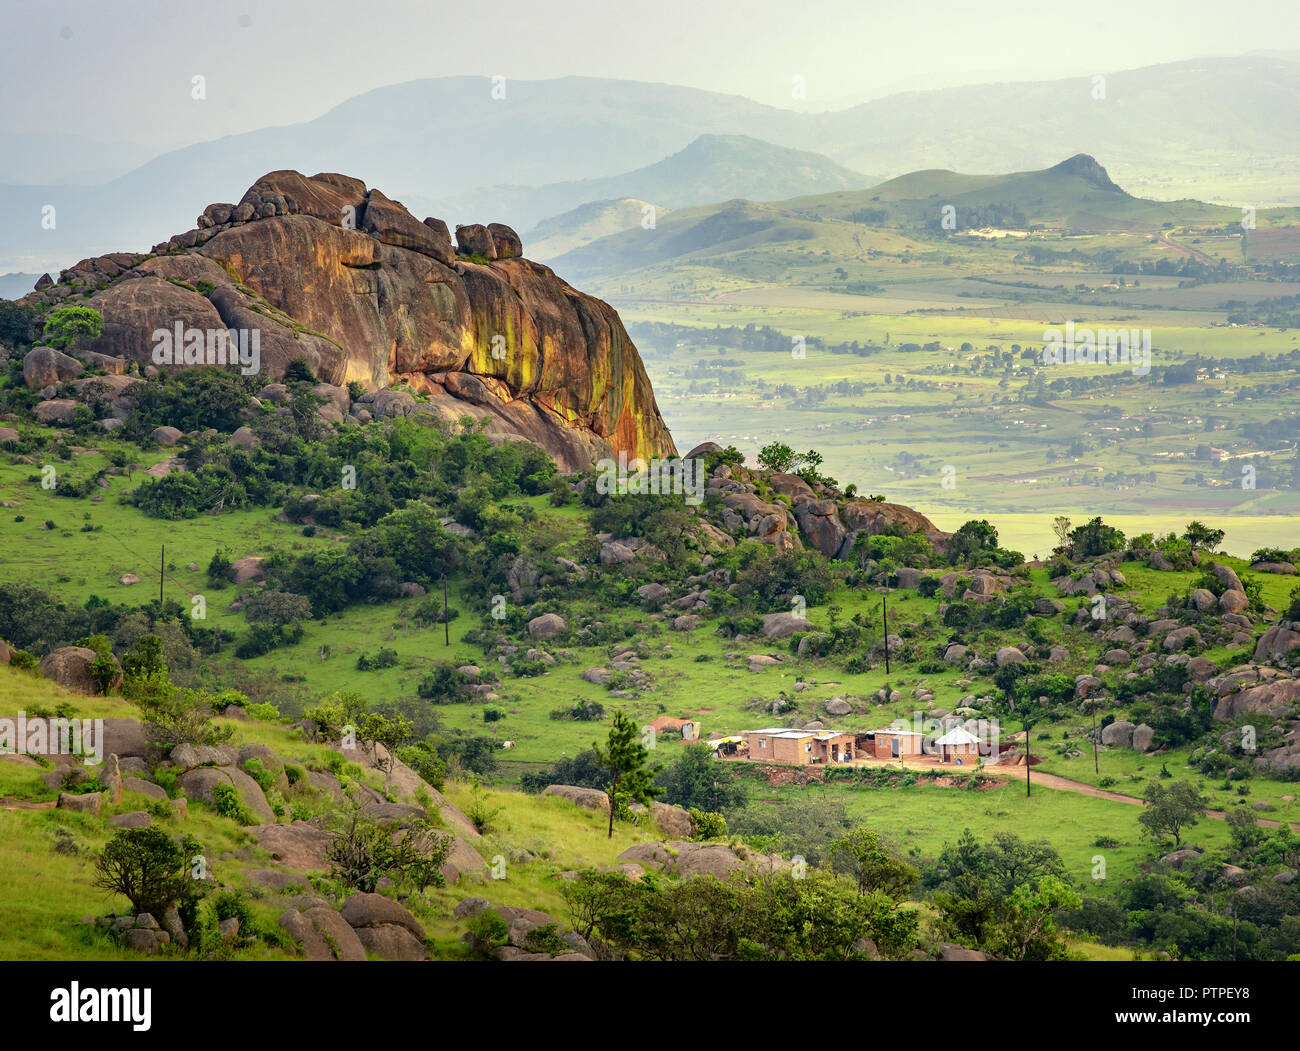 Ezulwini Valley in Swaziland eSwatini nello Swaziland, belle montagne, alberi e rocce nella pittoresca valle verde tra Mbabane e città Manzini Foto Stock